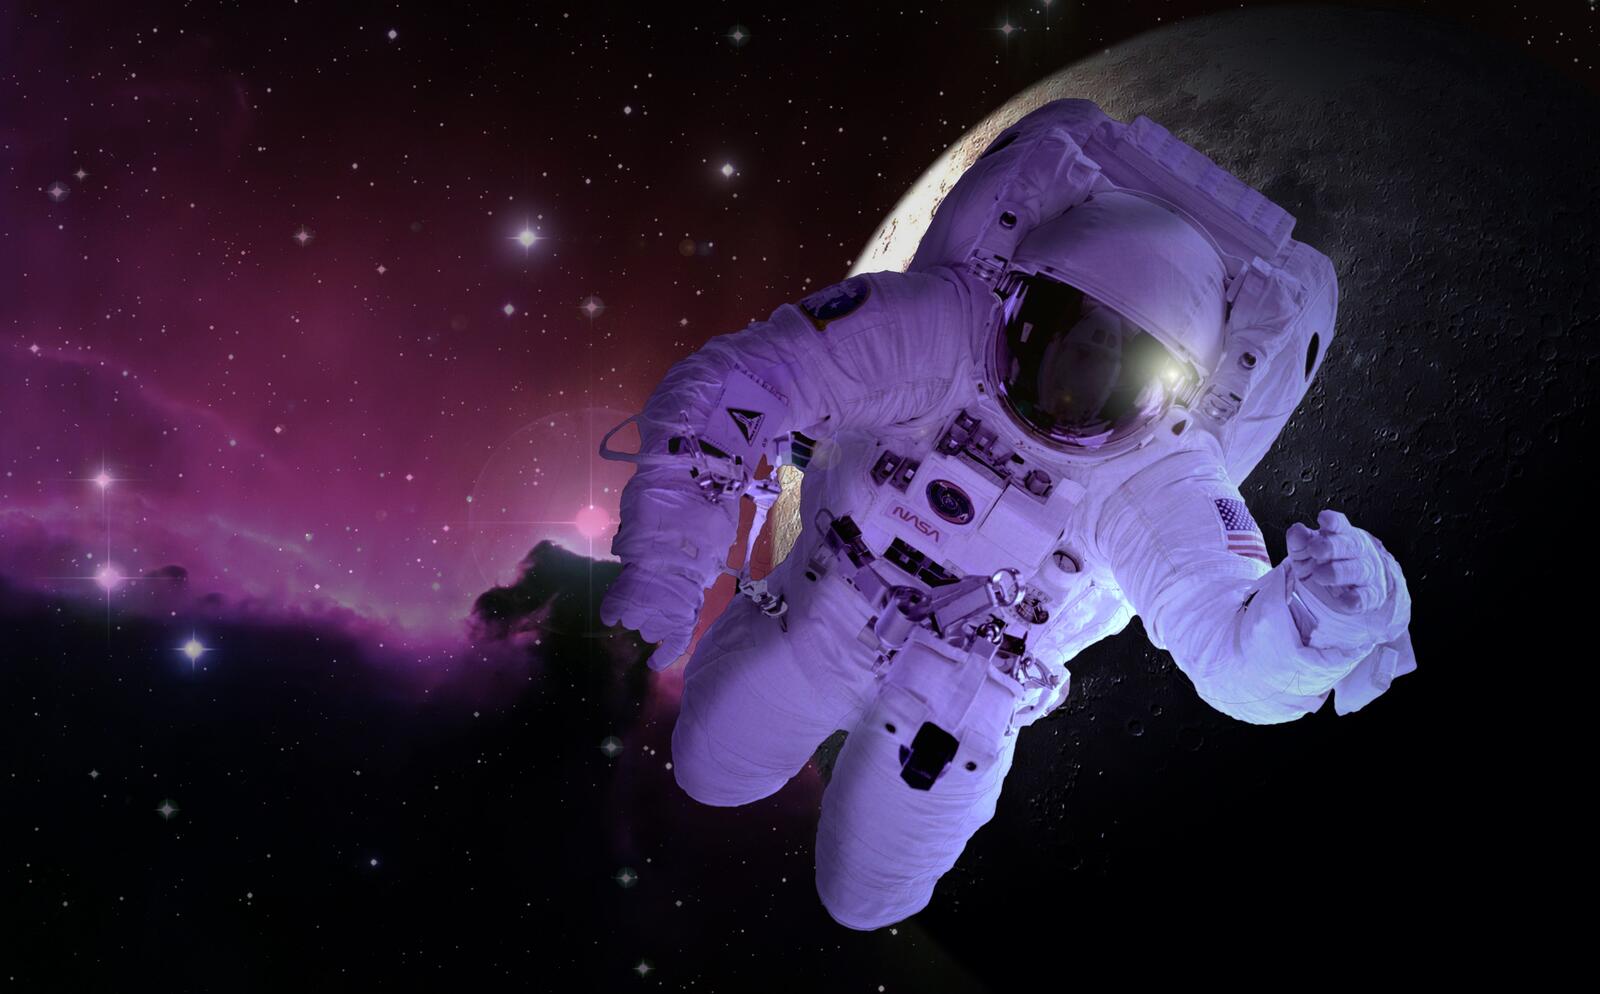 Картинка с космонавтом на фоне розовой космической туманности